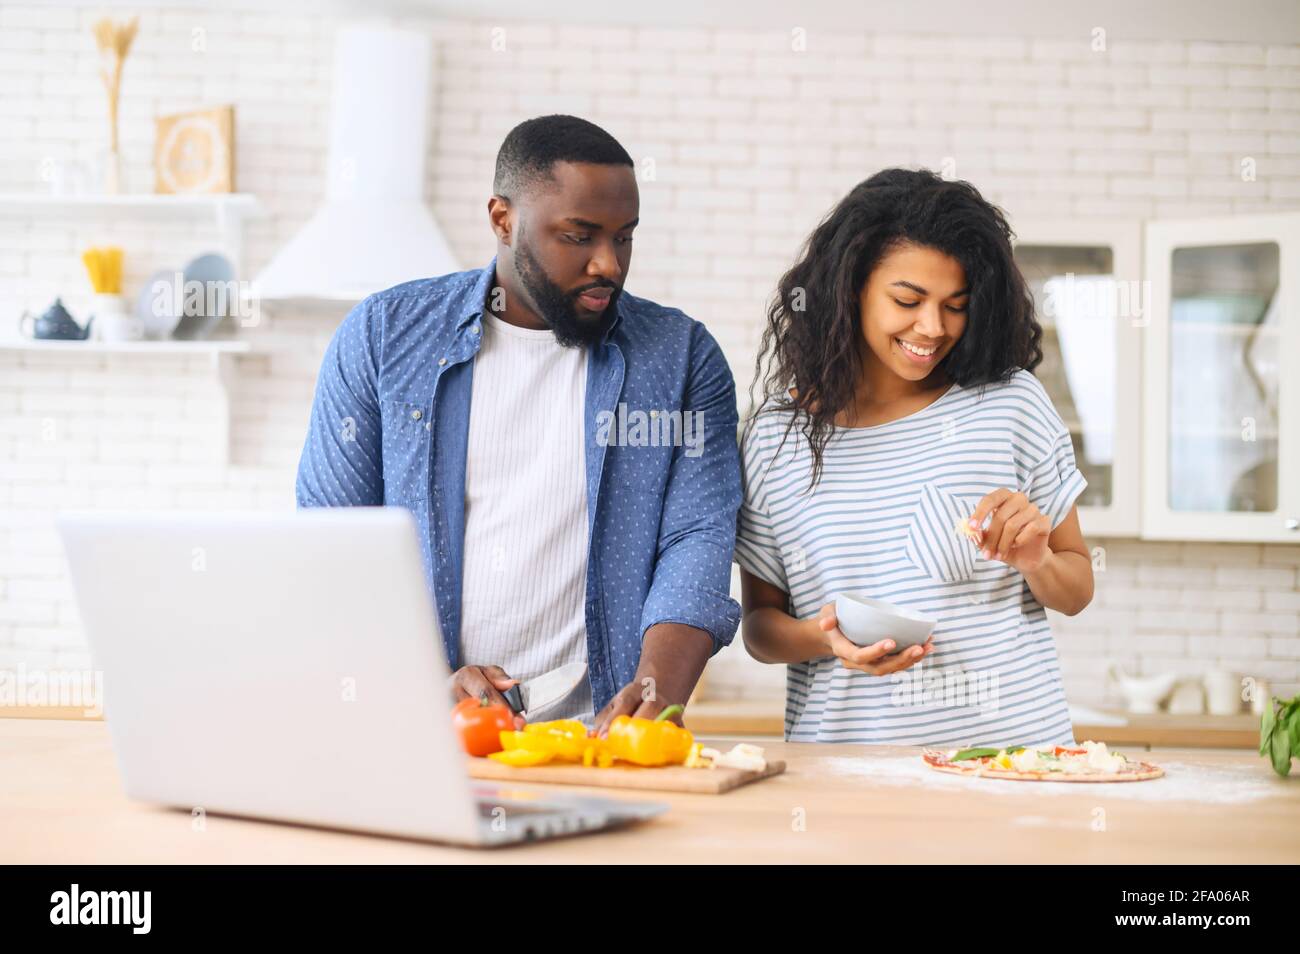 Eccitata giovane coppia afroamericana seguendo i passi da guardare le lezioni di cucina online, imparare a fare la pizza, guardare video blog corso dal portatile in cucina, il posizionamento di verdure Foto Stock